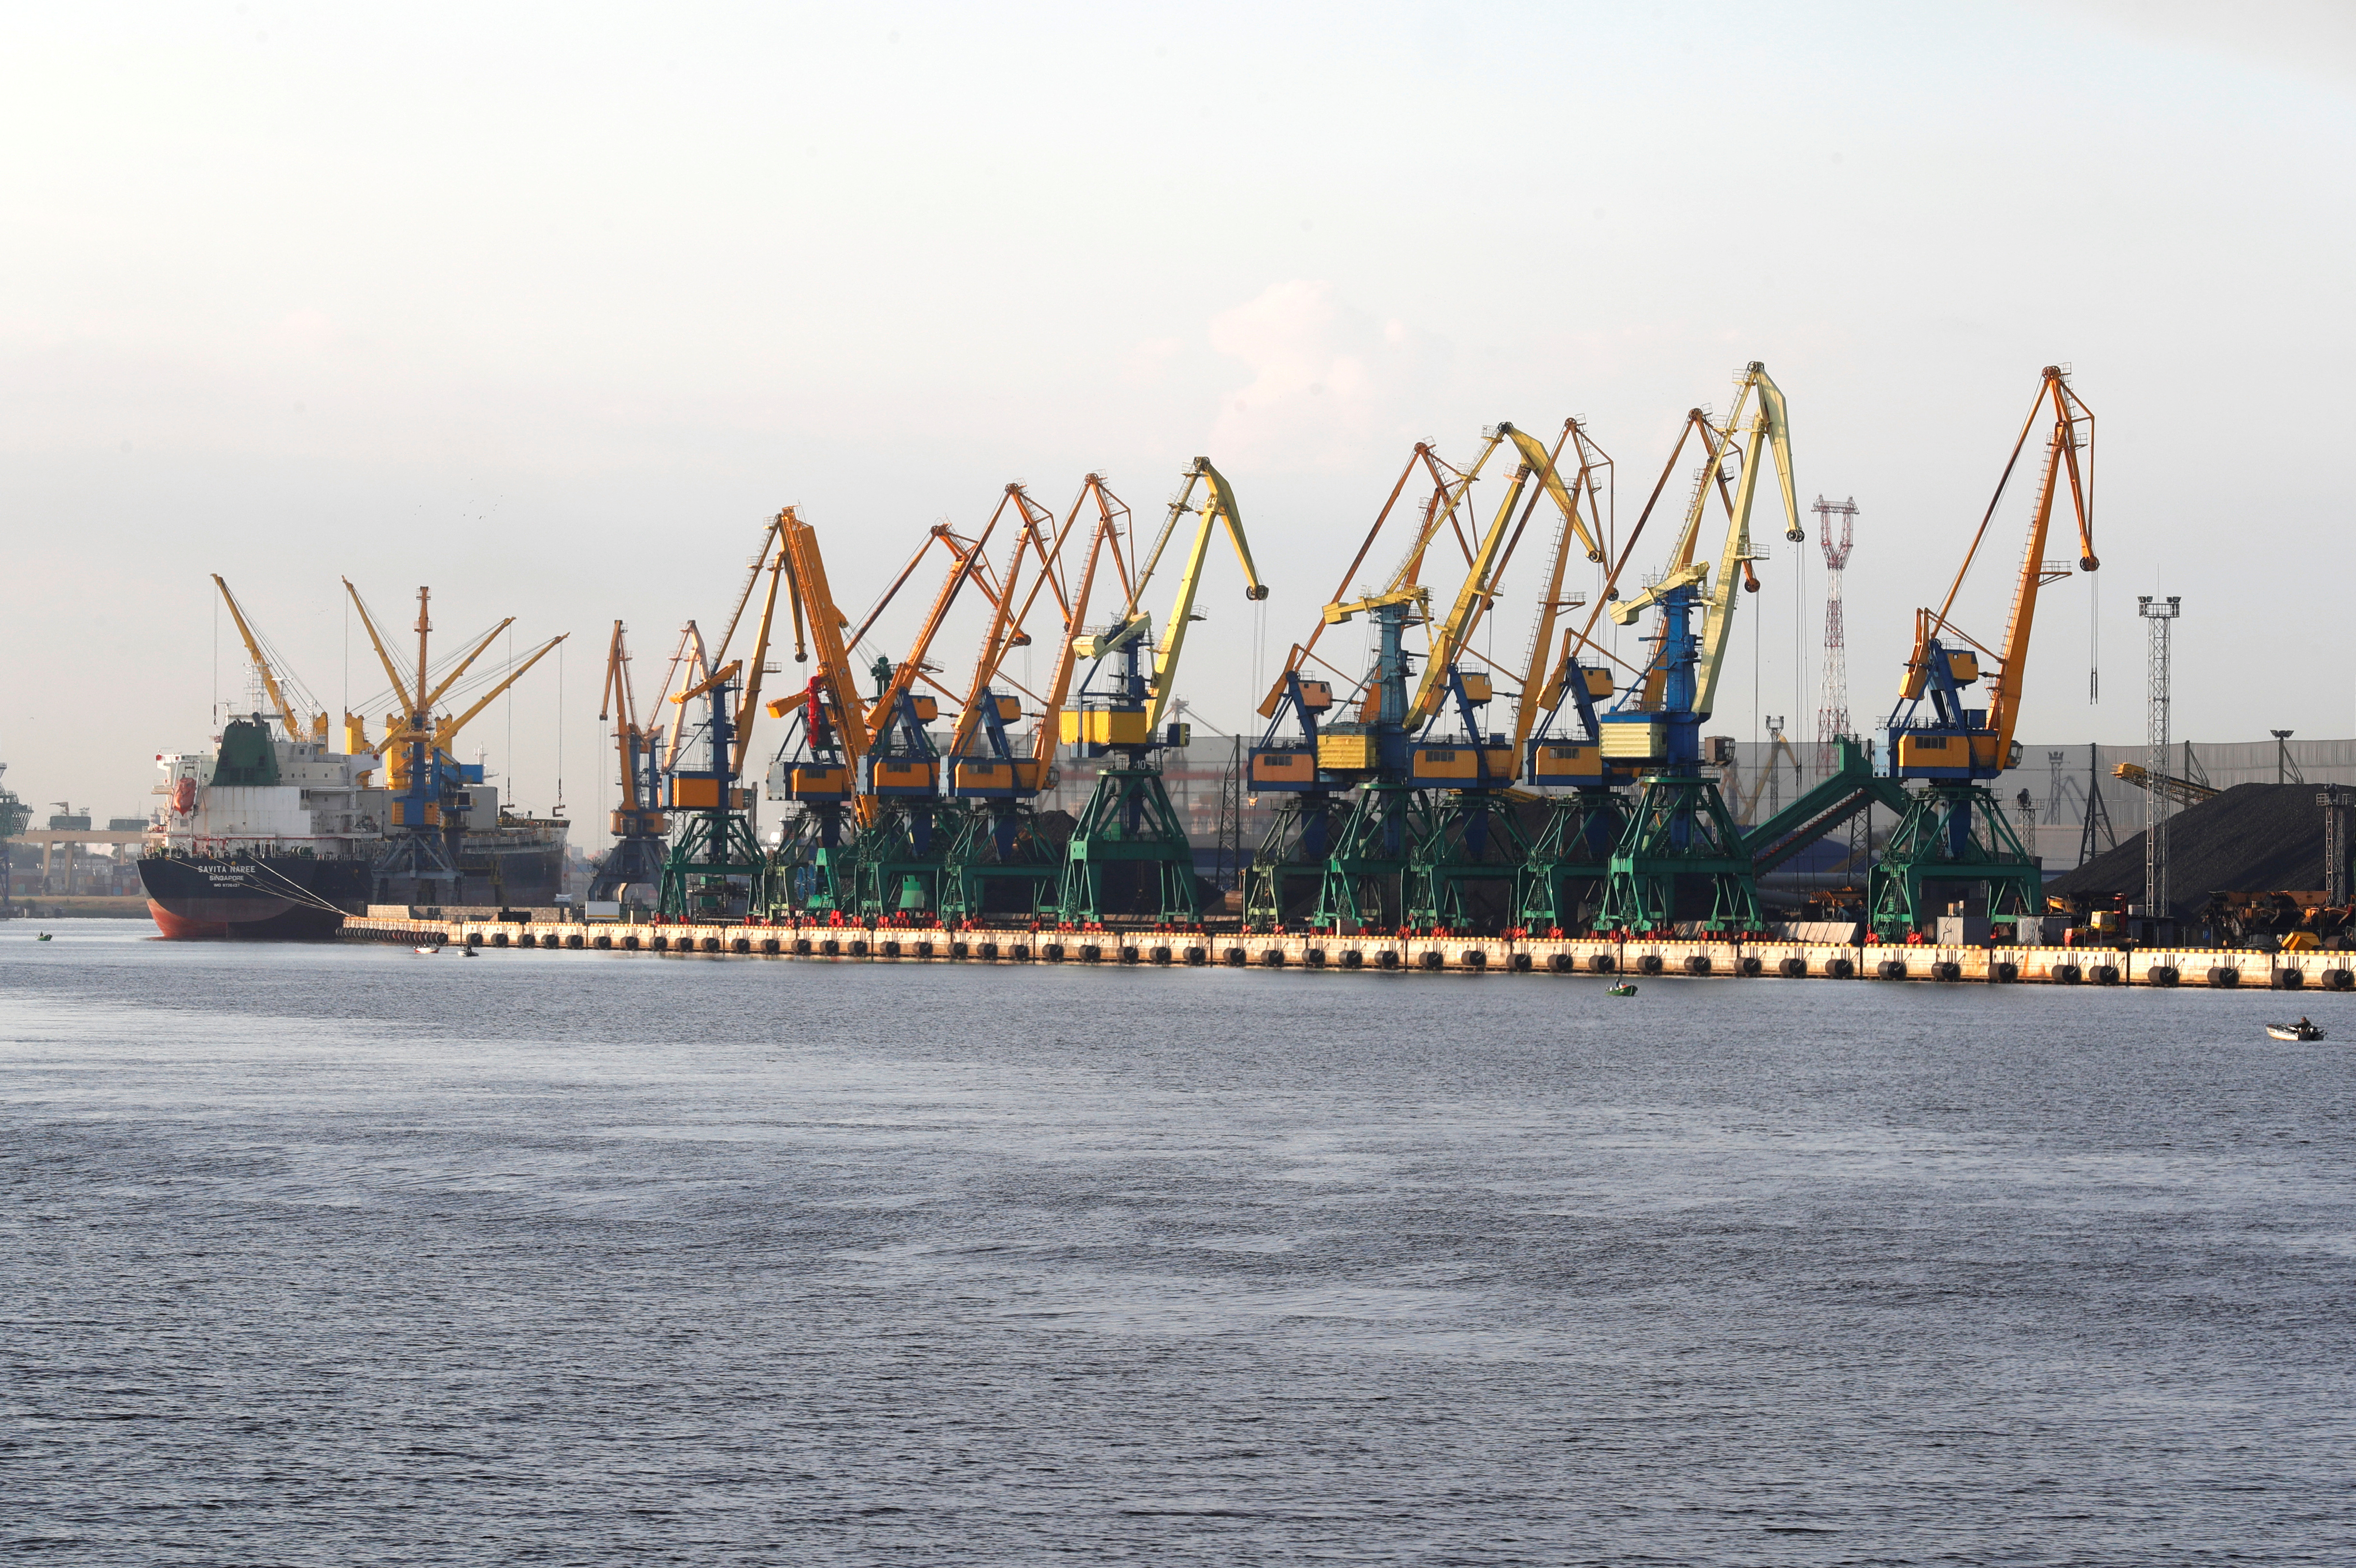 A wiev of the Riga port